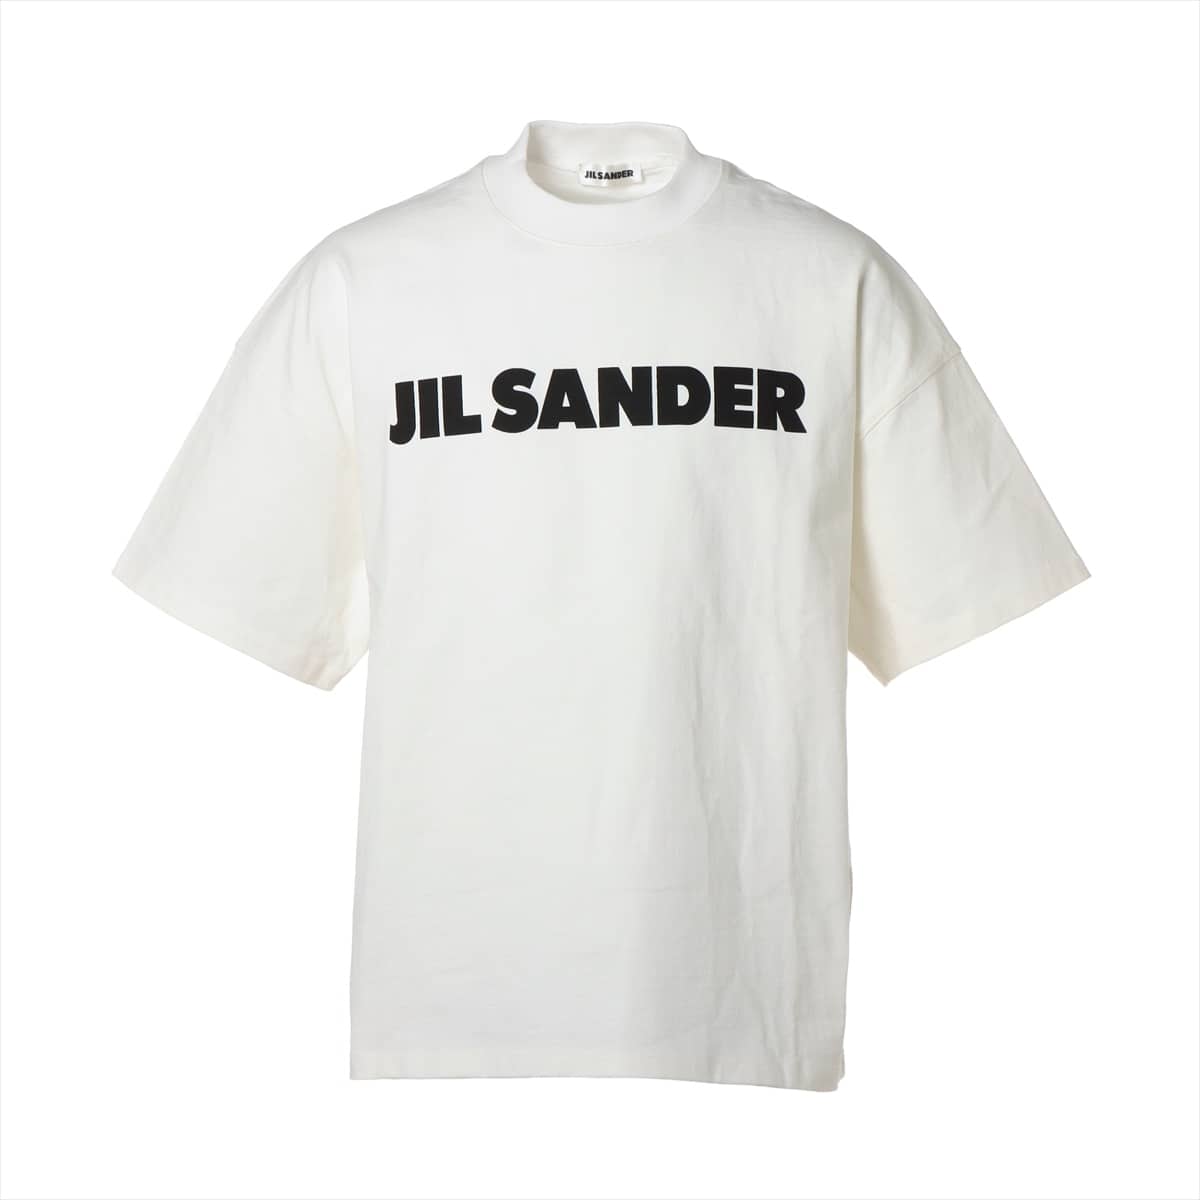 ジルサンダー コットン Tシャツ S メンズ ホワイト ロゴ